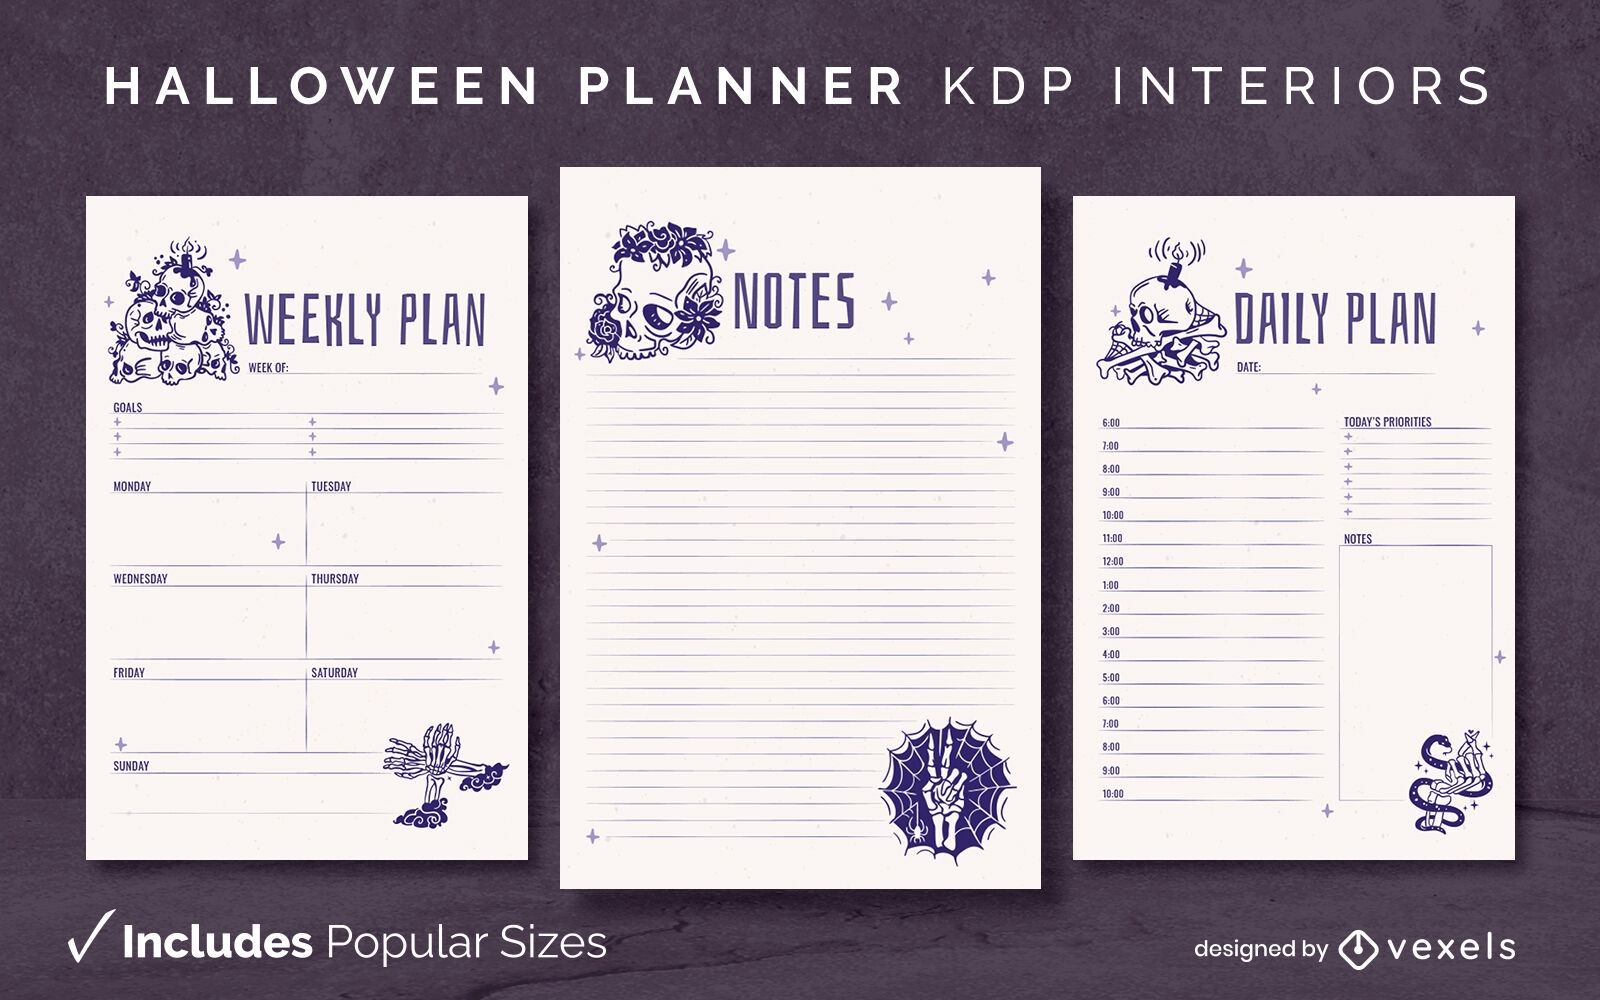 Plantilla de diario de esqueletos del planificador de Halloween Diseño de interiores KDP